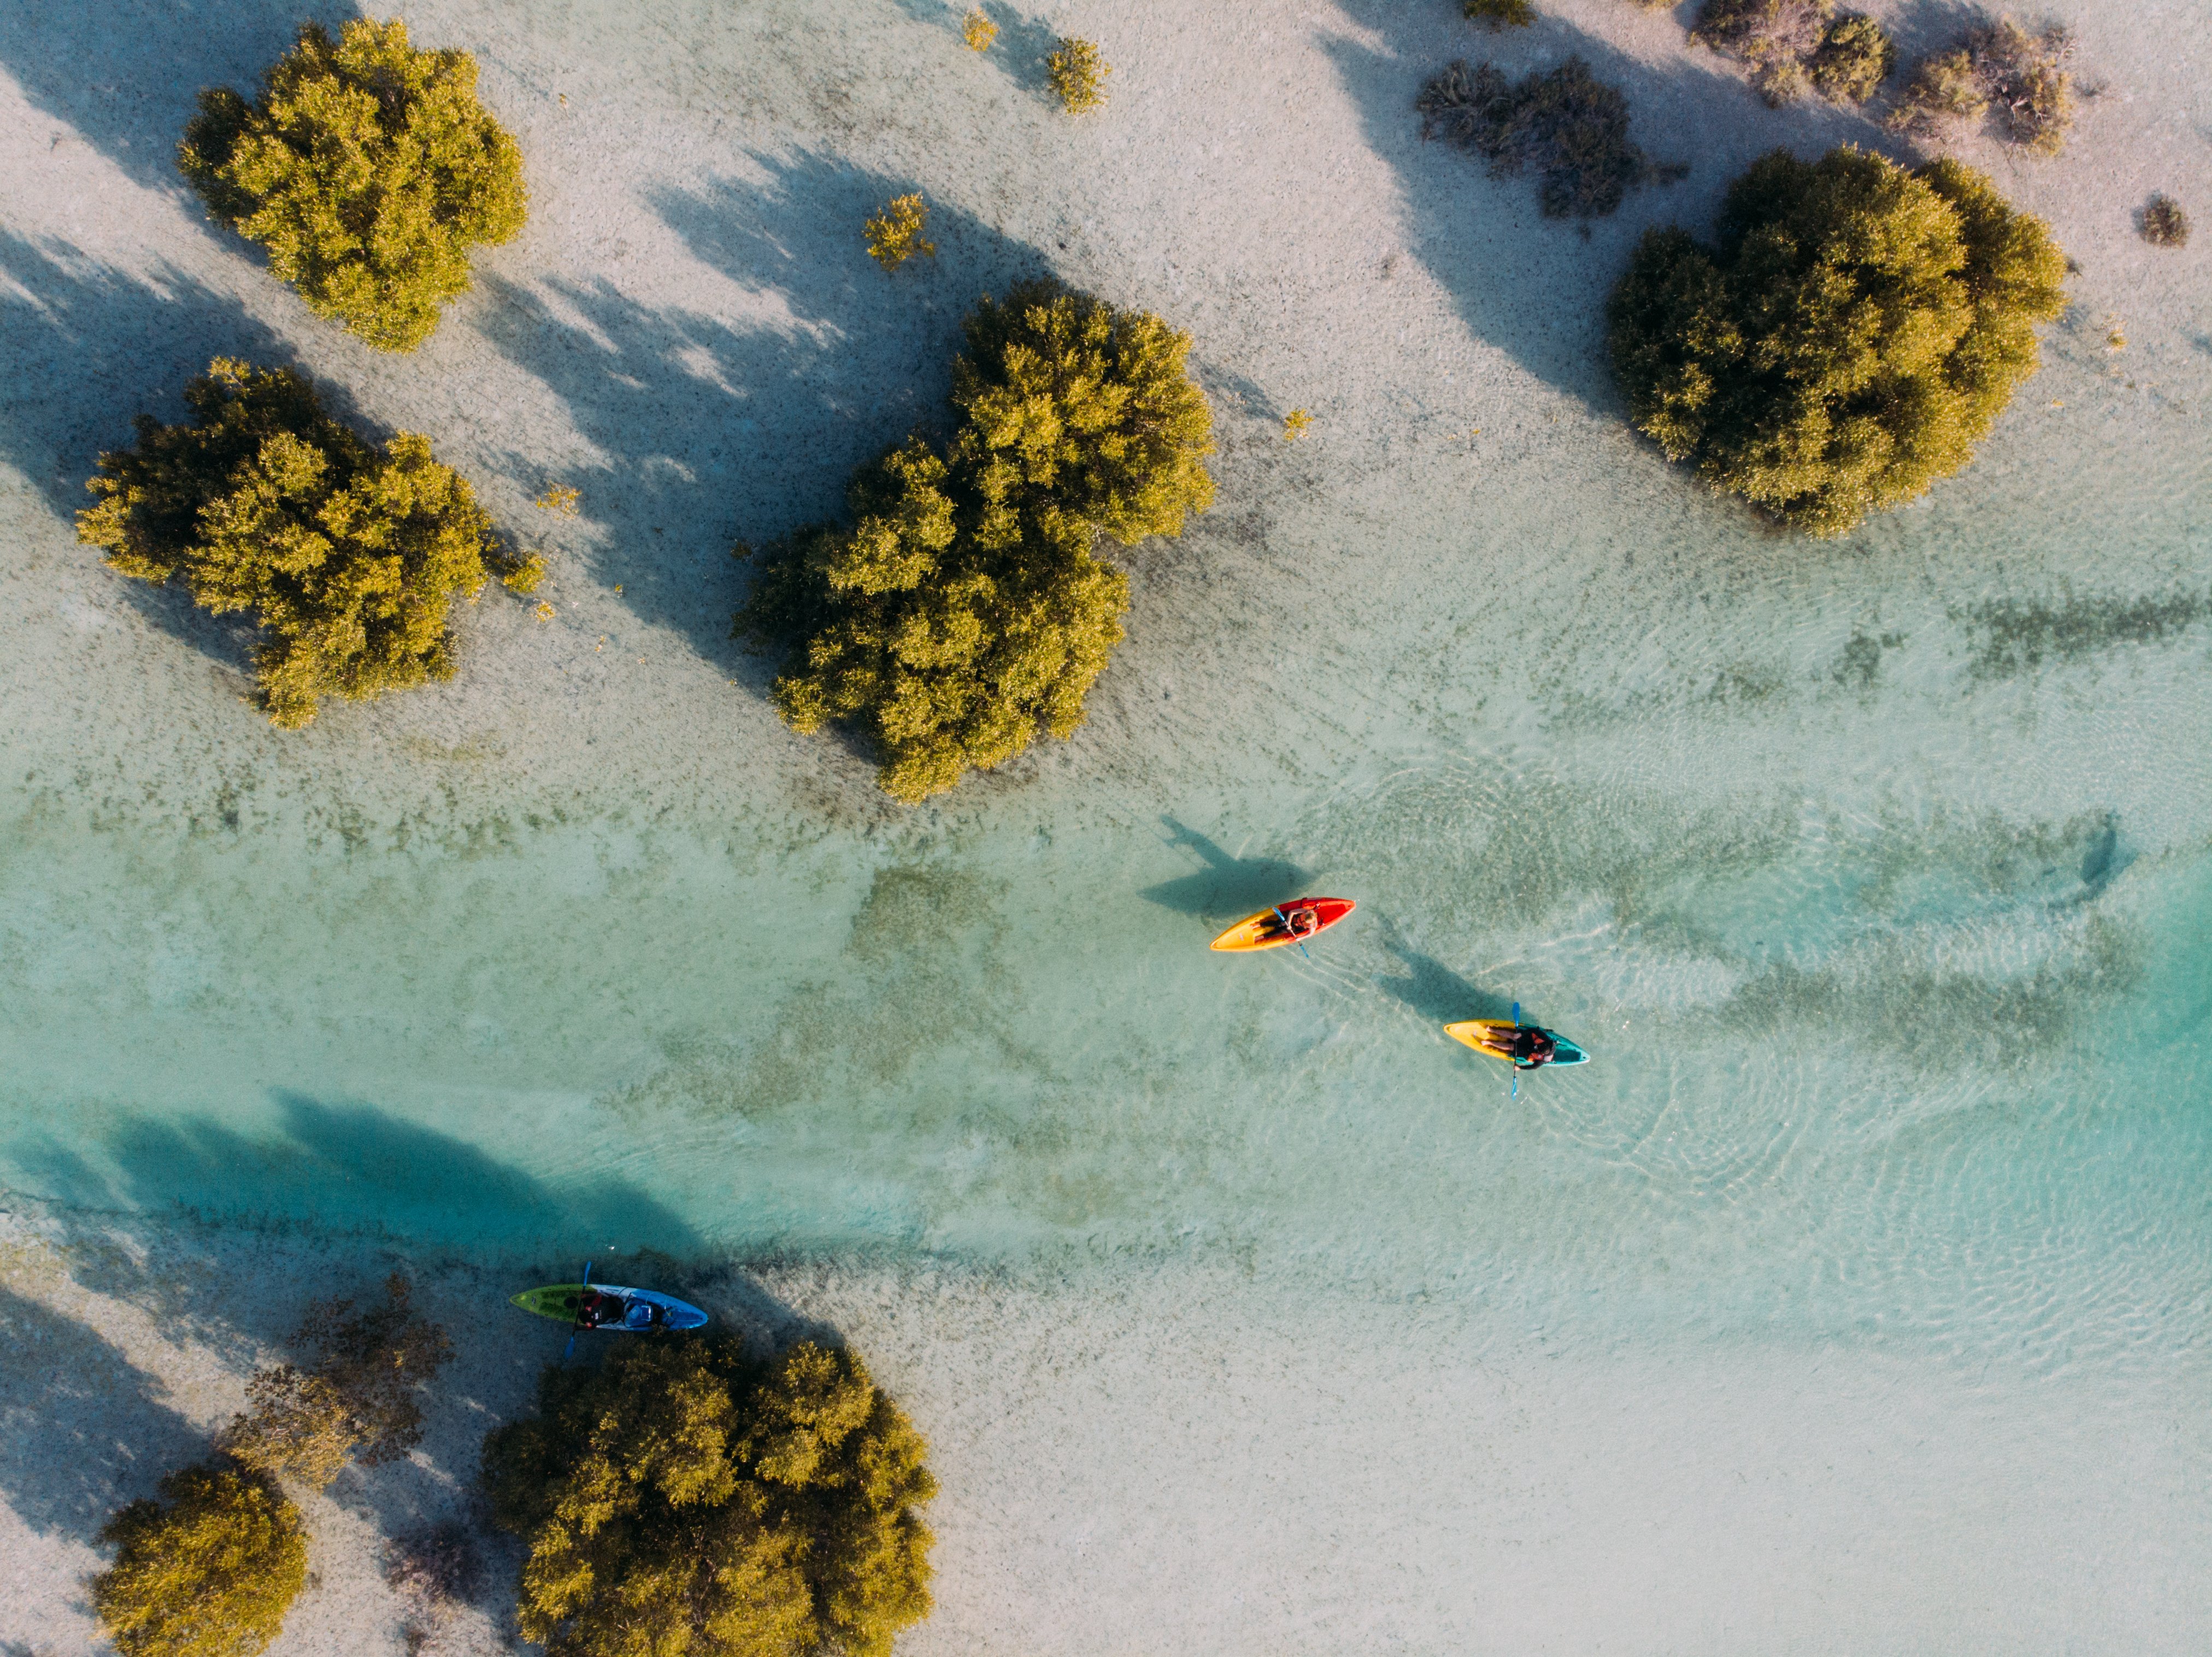 Vista aerea al parco delle Mangrovie ad Abu Dhabi. Ci sono tre persone in kayak.